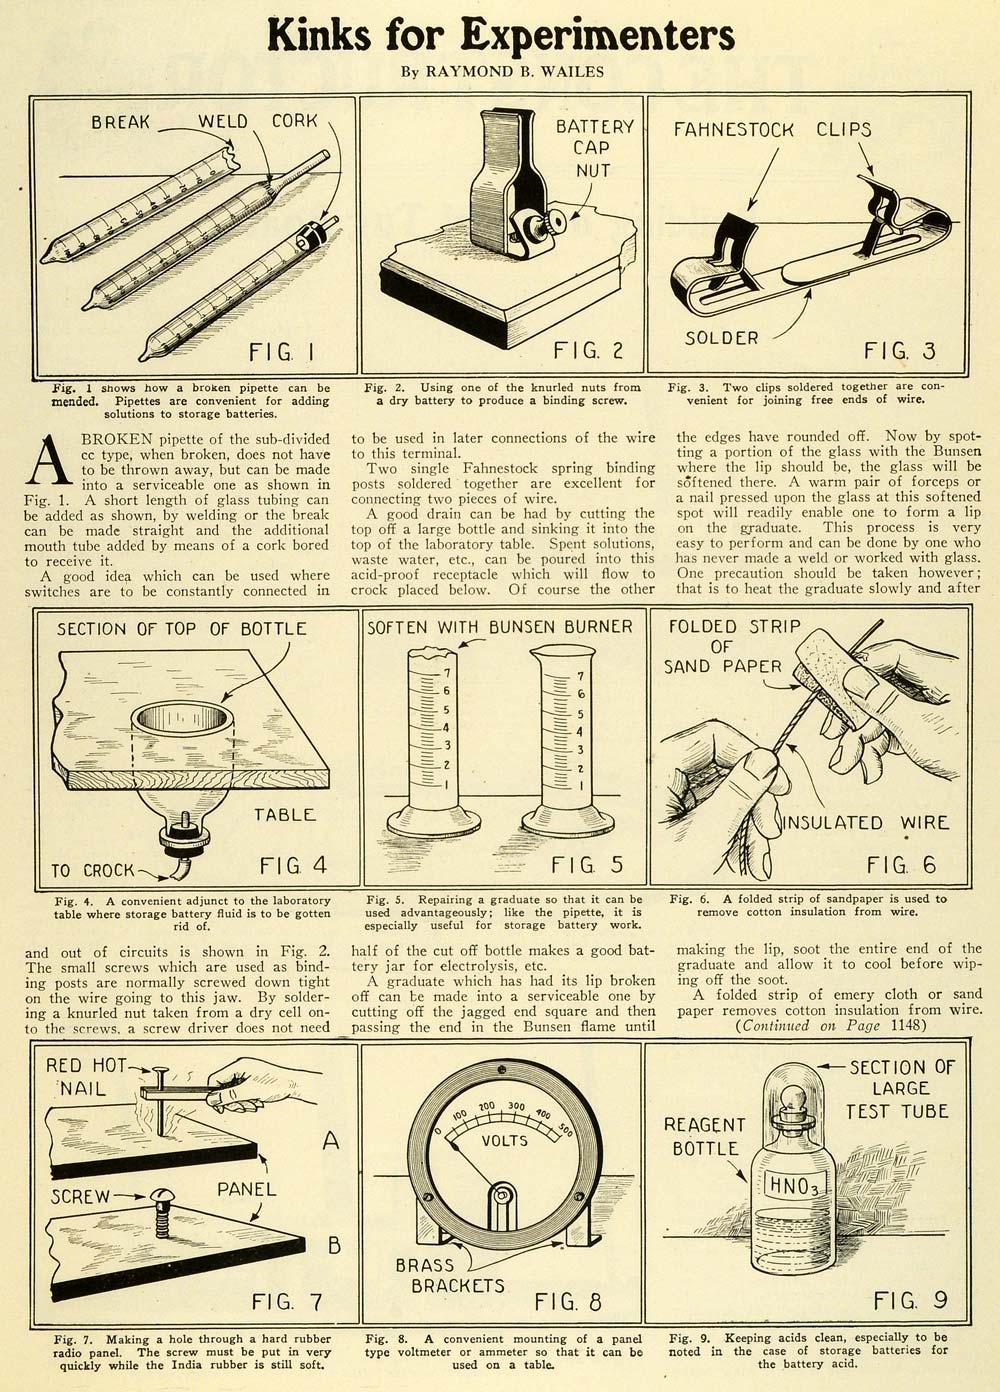 1927 Article Broken Pipe Repair DIY Diagrams Bunsen Burner Tools Circuits SI1